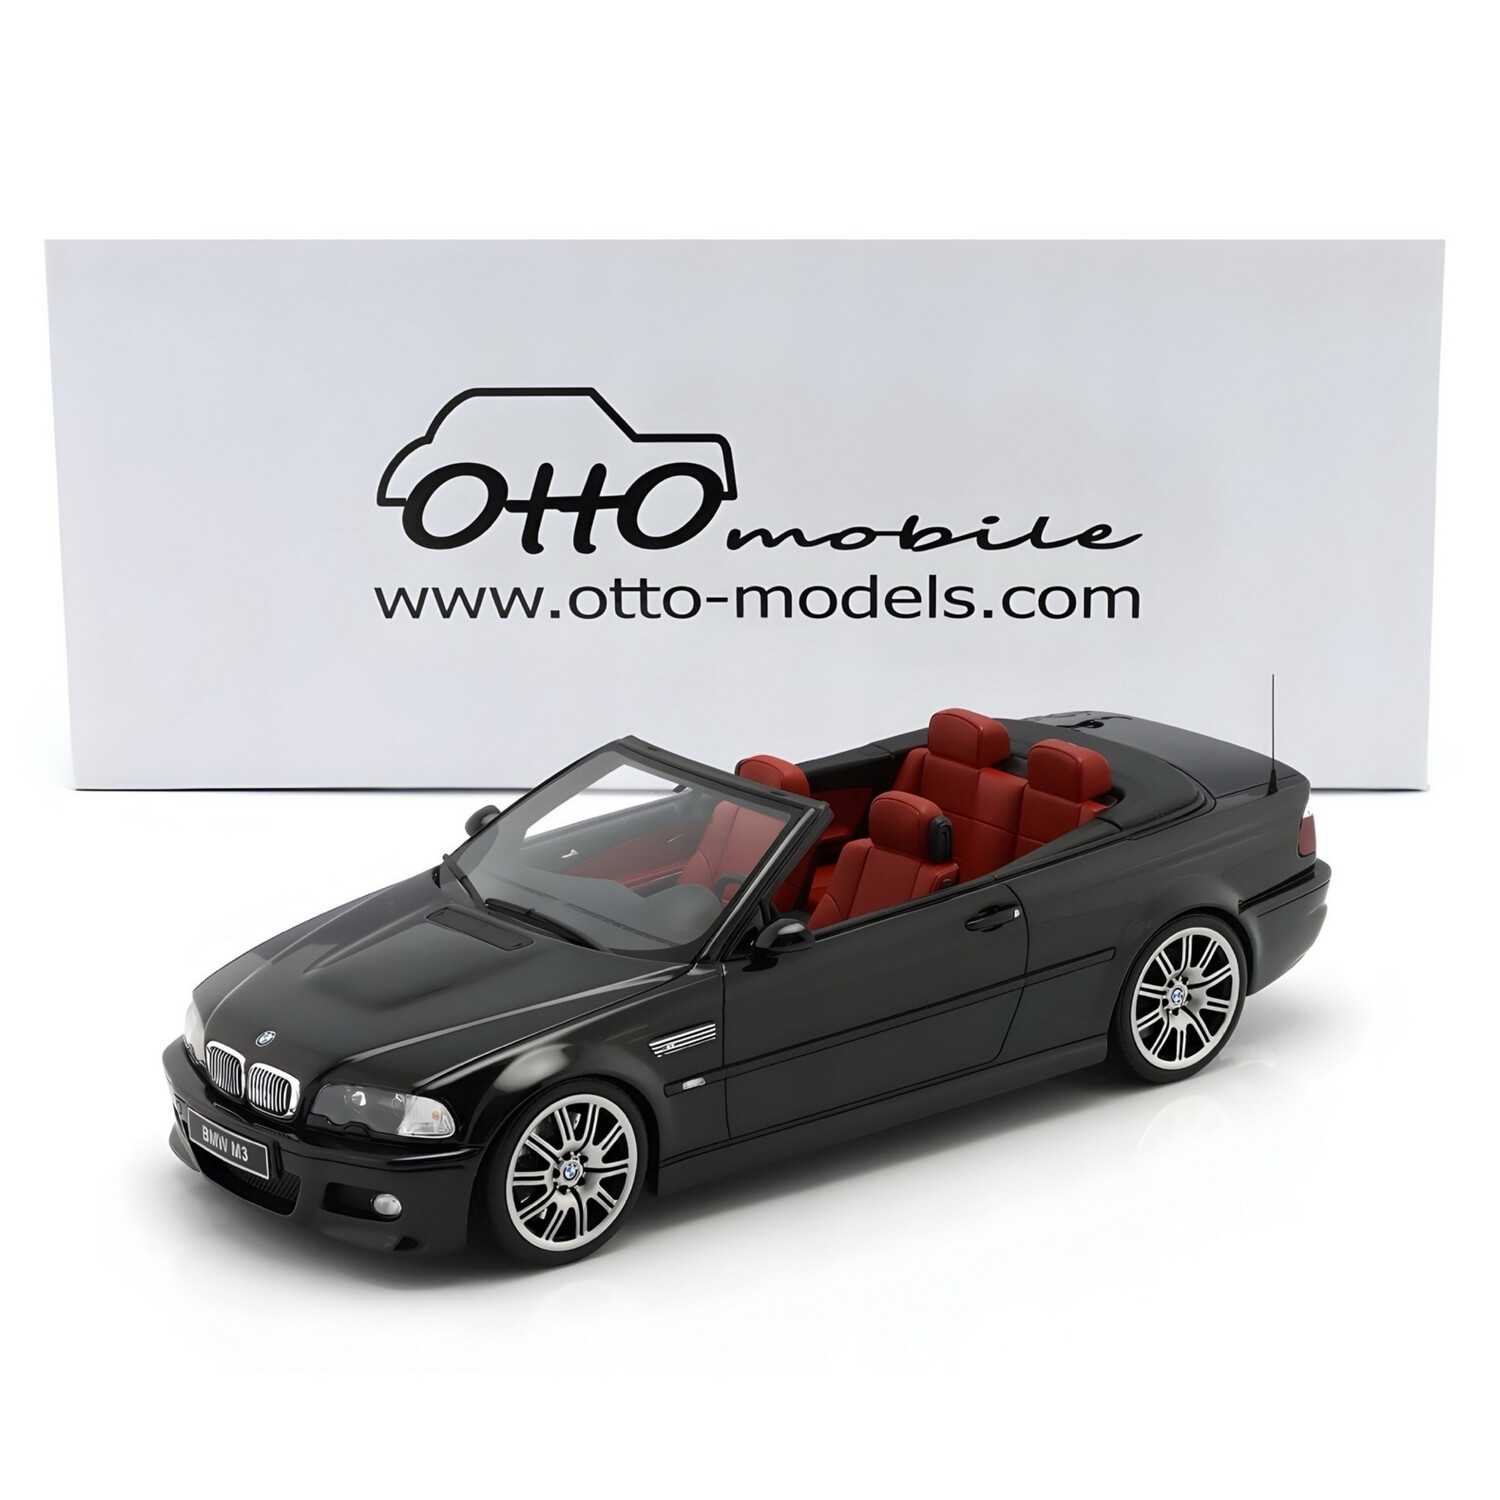 1/18 Otto Mobile BMW E46 M3 Convertible Black Diecast Model Car